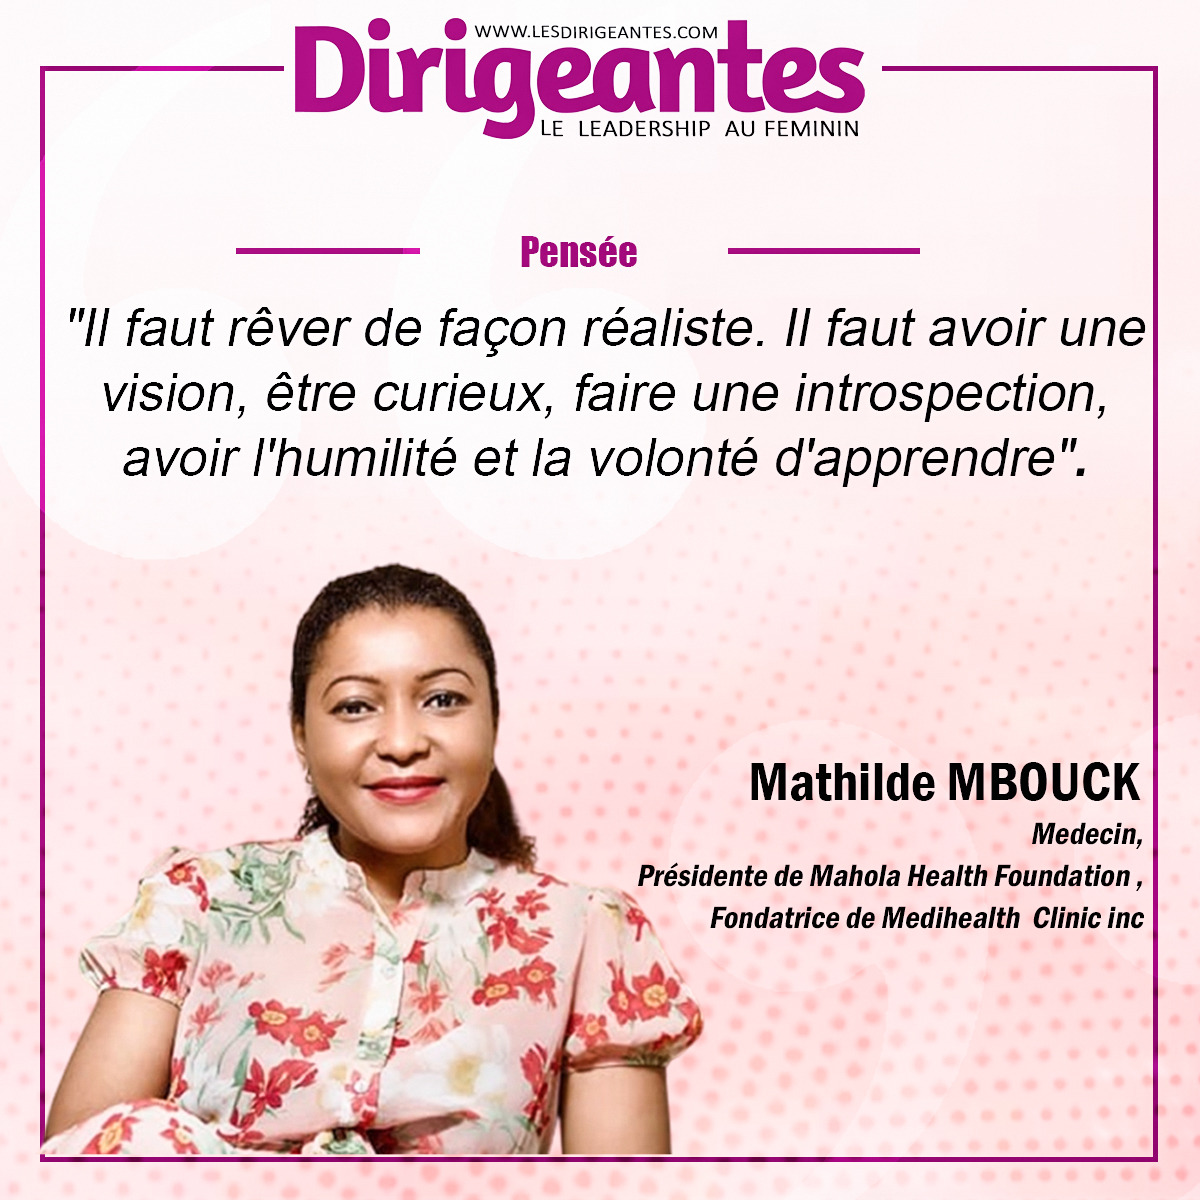 Mathilde MBOUCK Medecin, Présidente de Mahola Health Fondation, Fondatrice de Medihealth Clinic inc